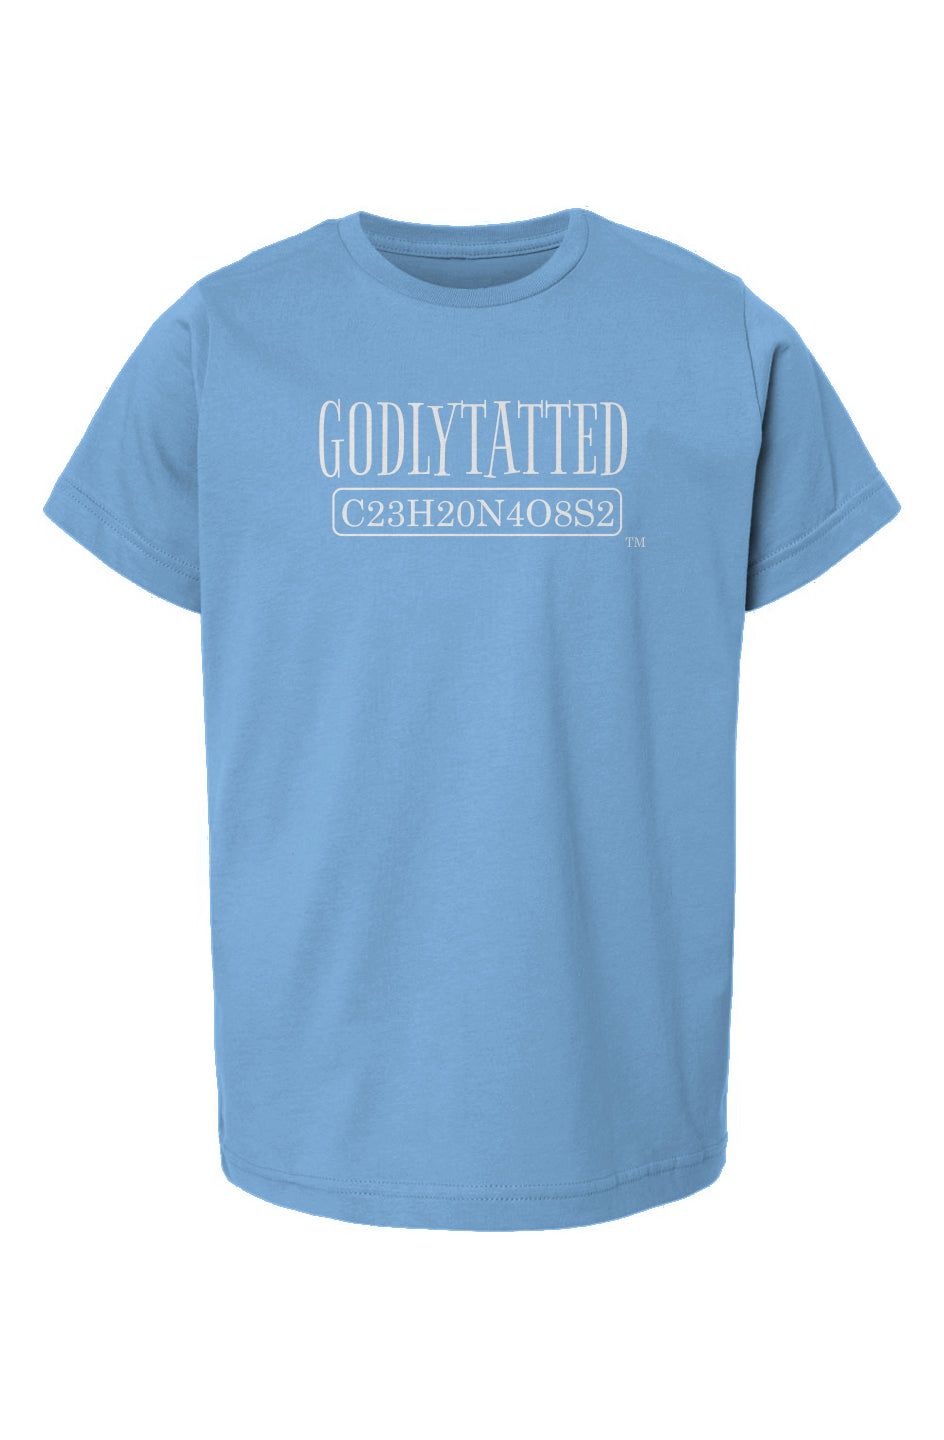 godlytatted - kids - Light blue - white logo